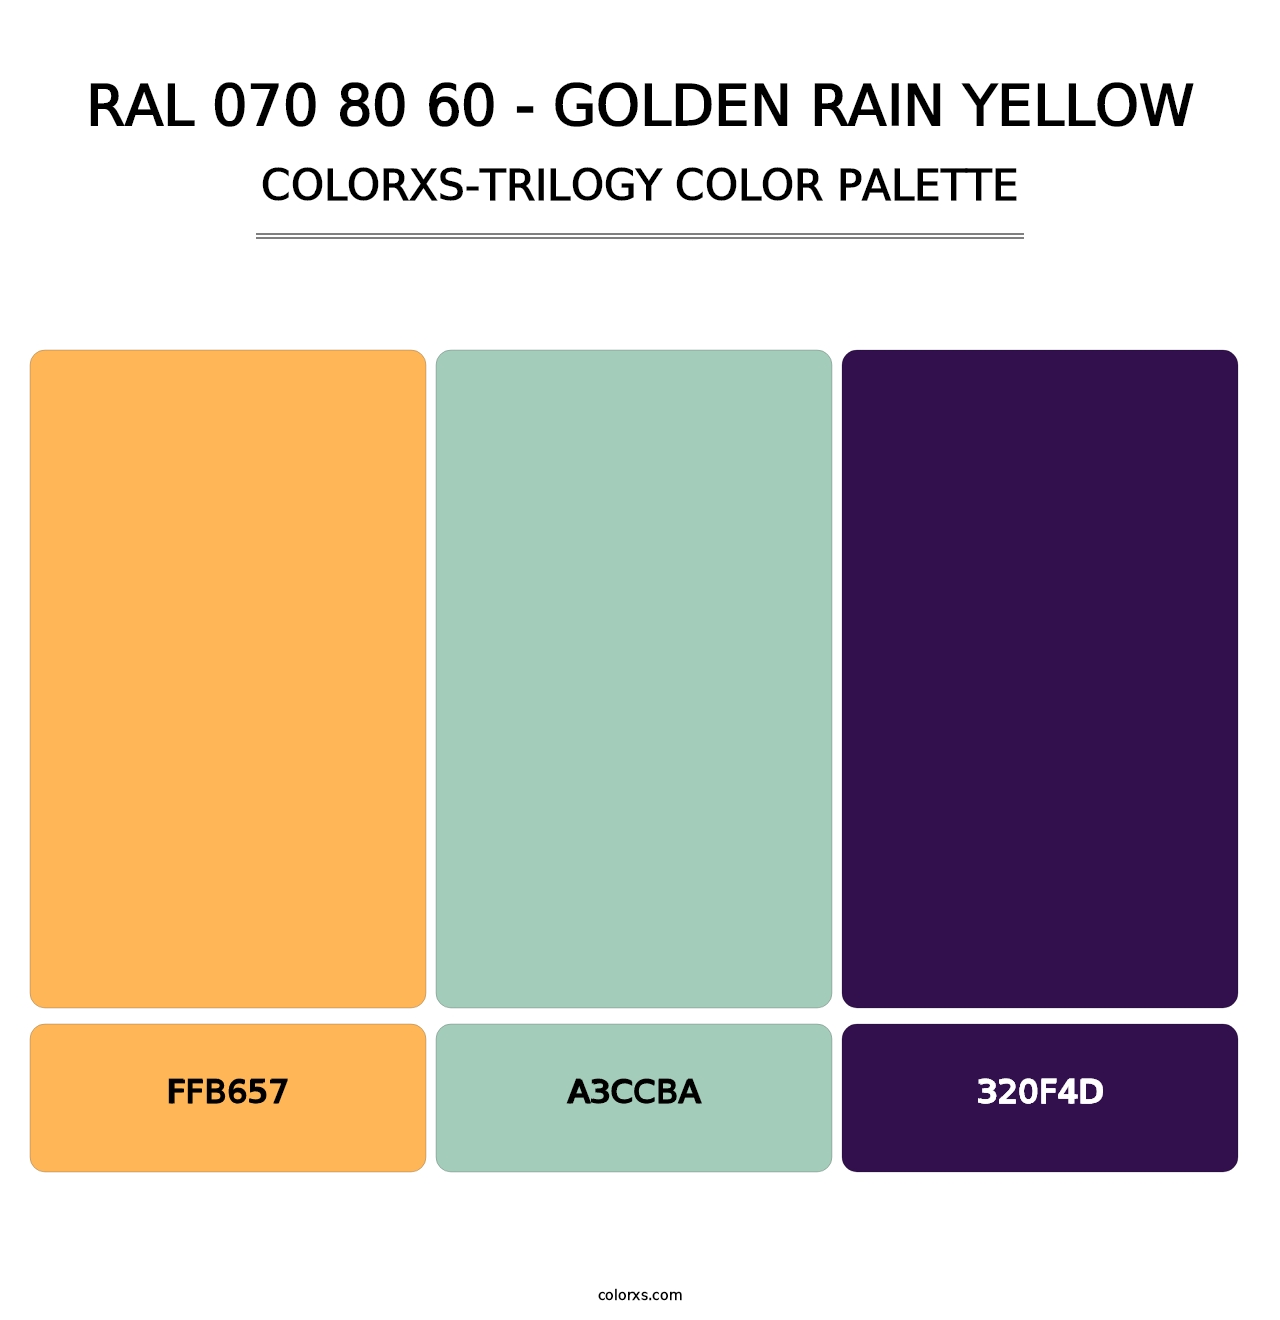 RAL 070 80 60 - Golden Rain Yellow - Colorxs Trilogy Palette